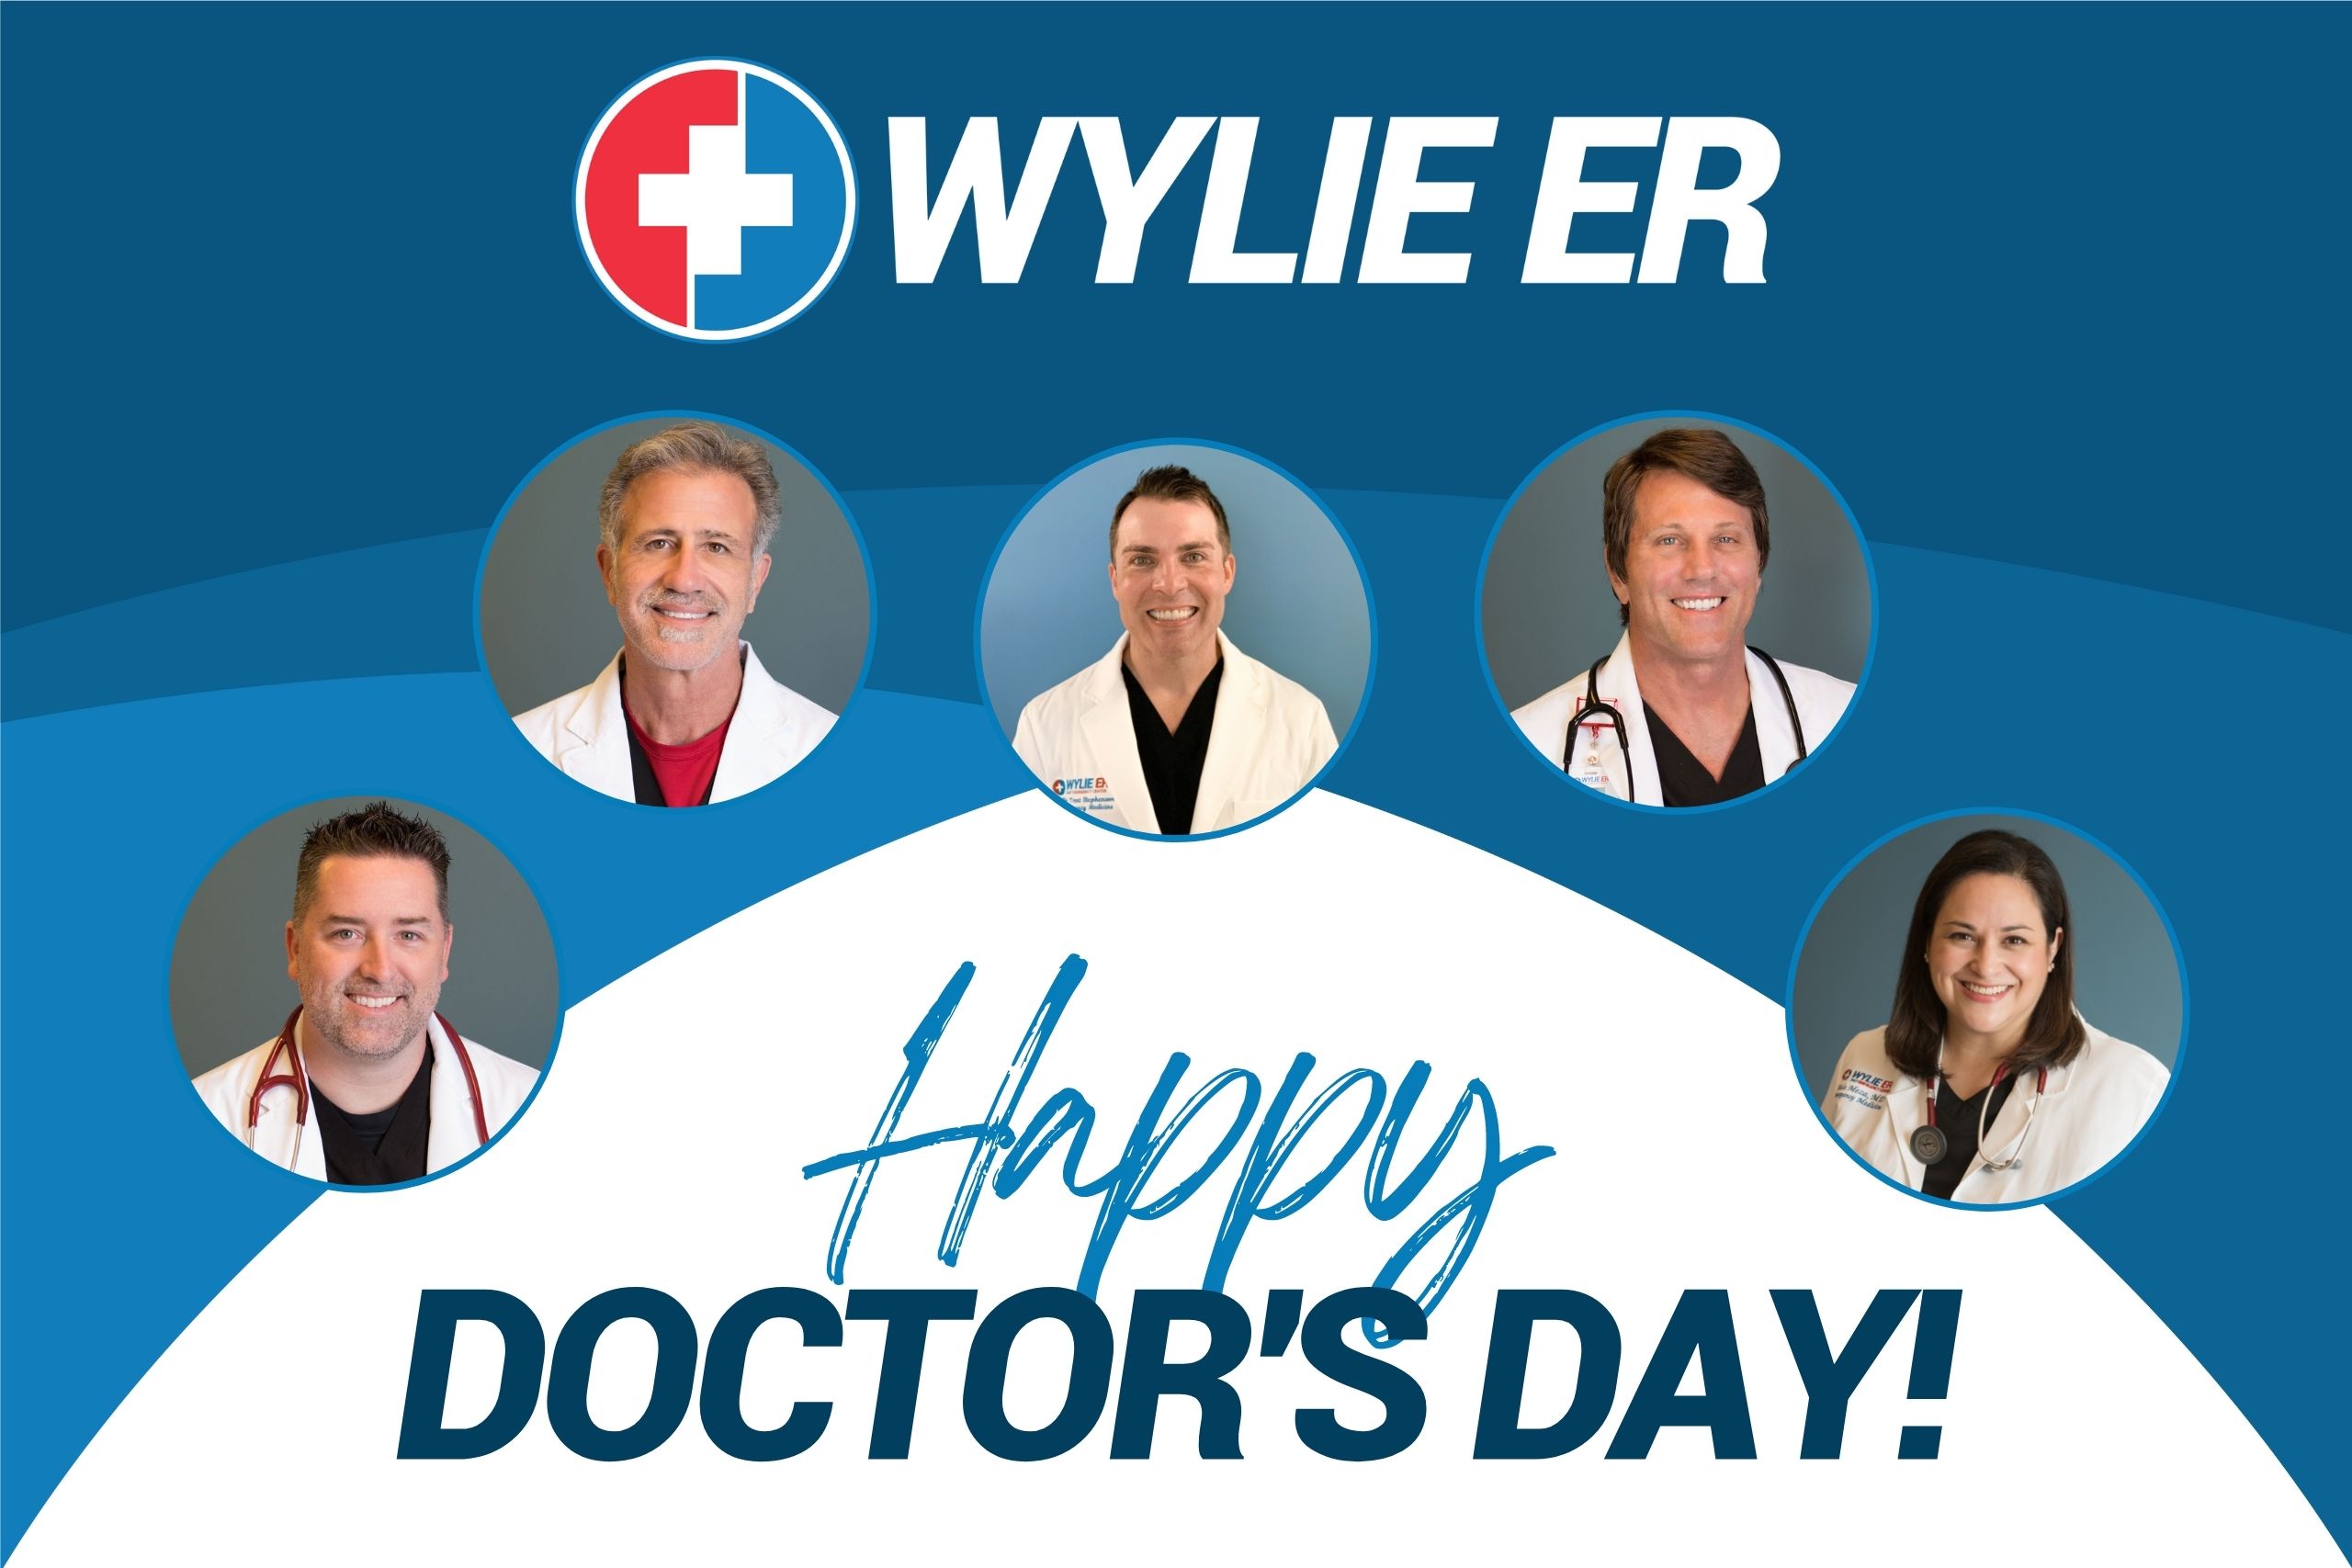 Wylie ER doctors